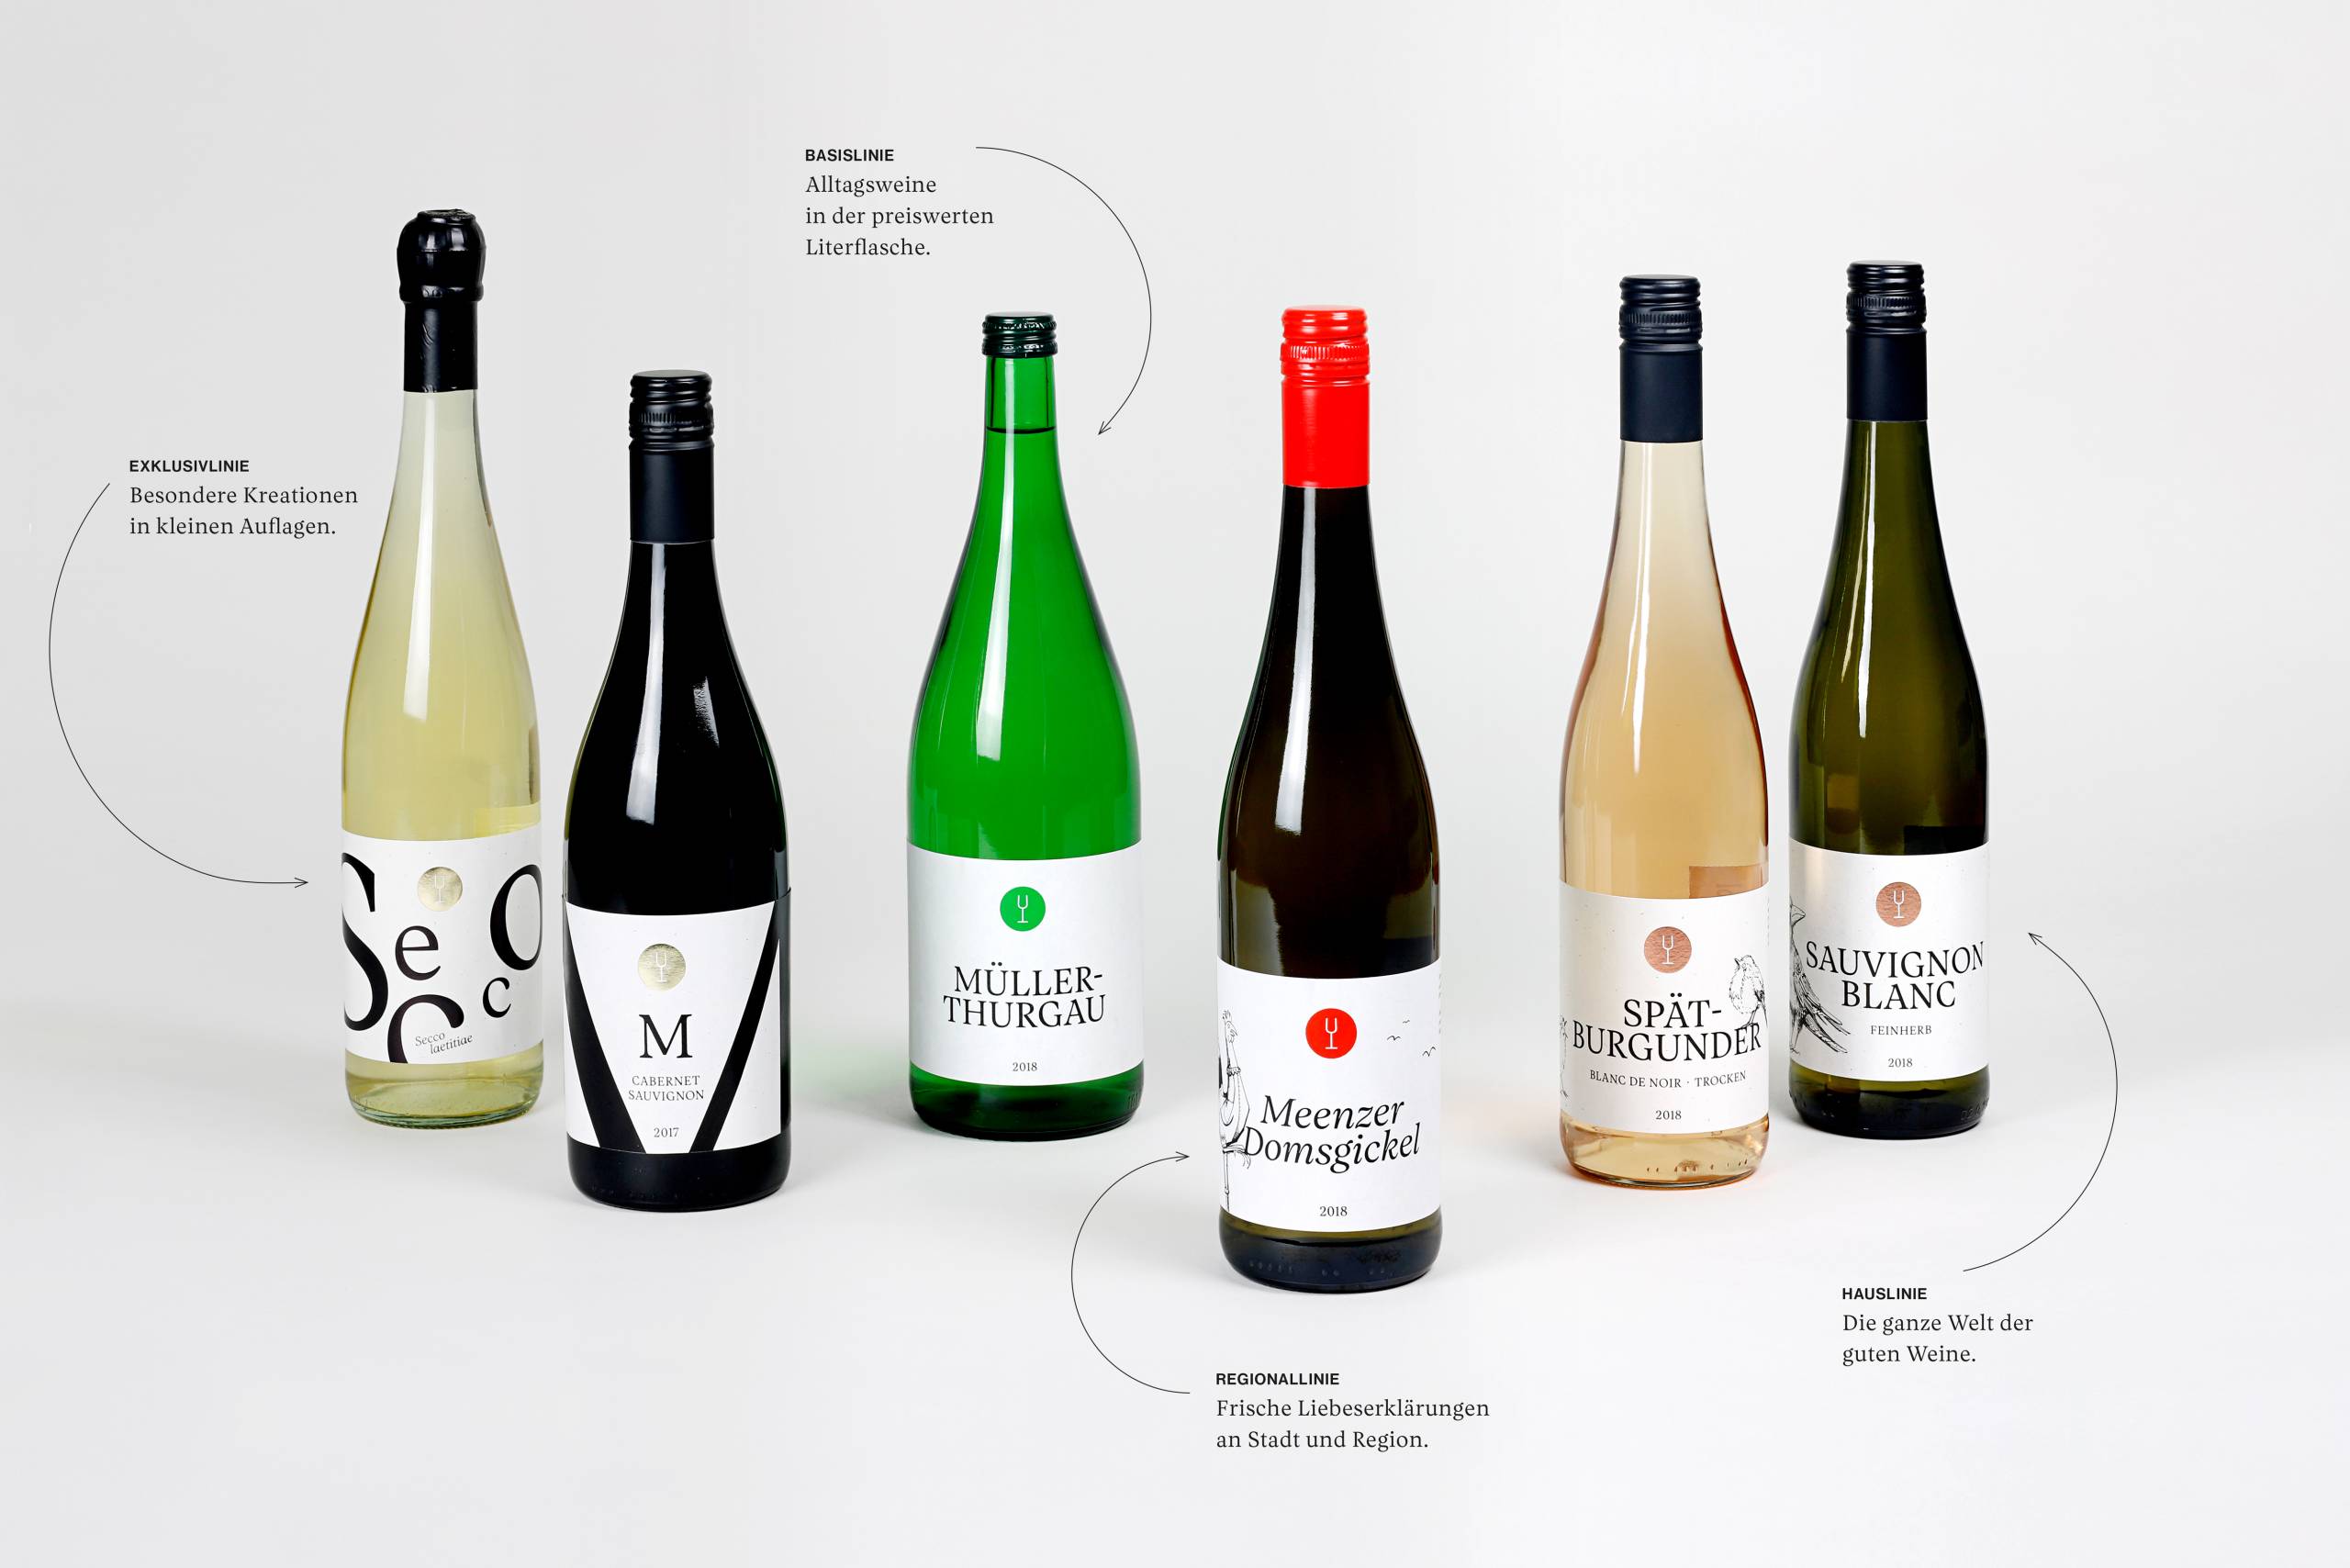 Sortiment und Flaschengestaltung der Weinlinien – Design by ANKER